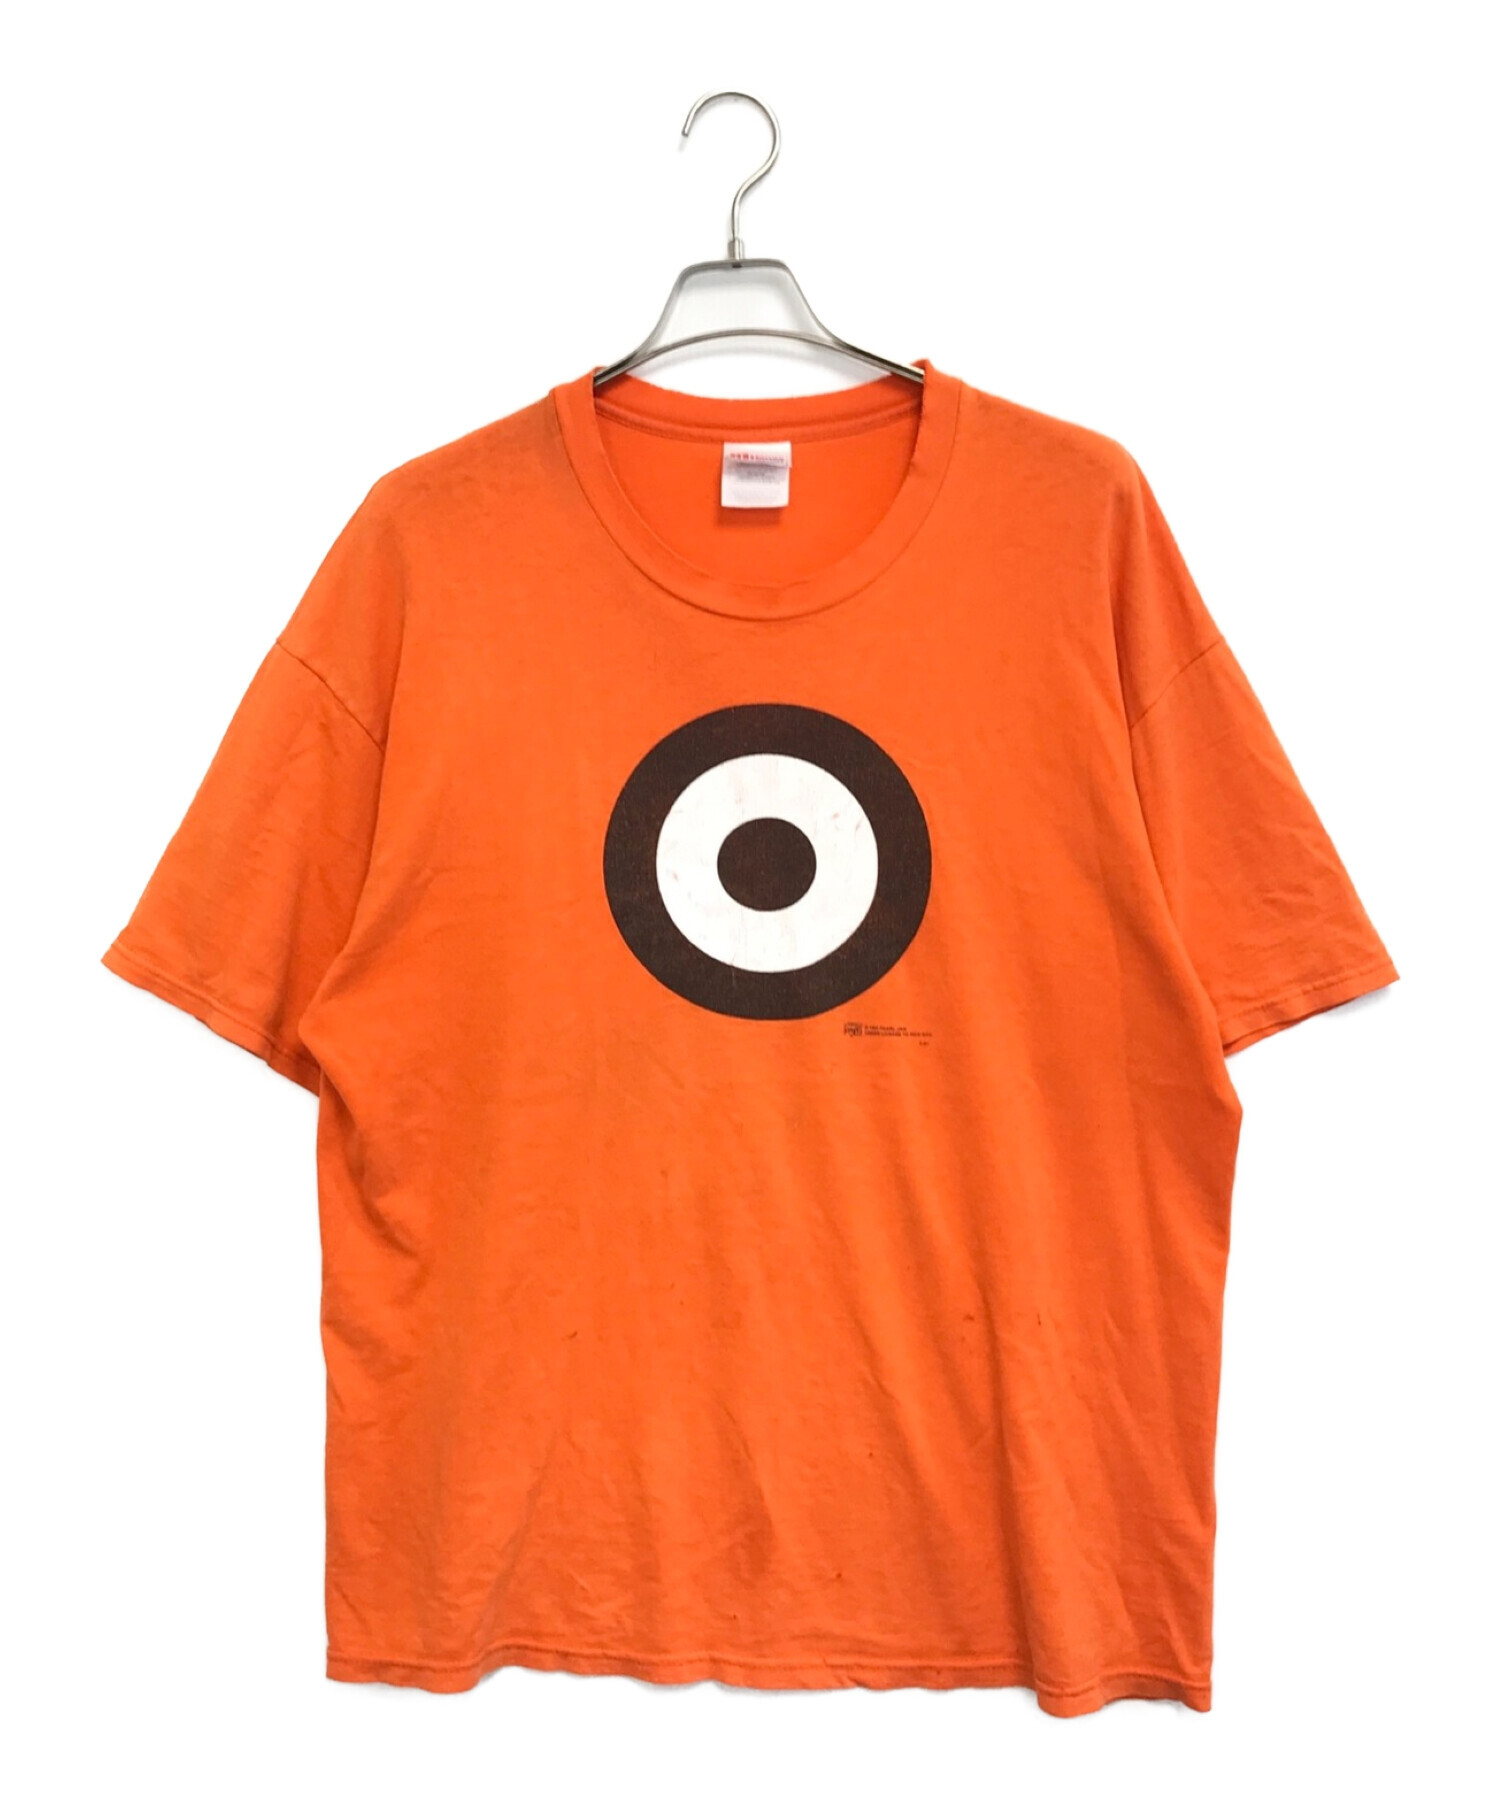 バンドTシャツ (バンドTシャツ) [古着]PEARL JAM(パール・ジャム) ターゲットロゴプリントバンドTシャツ オレンジ サイズ:XL